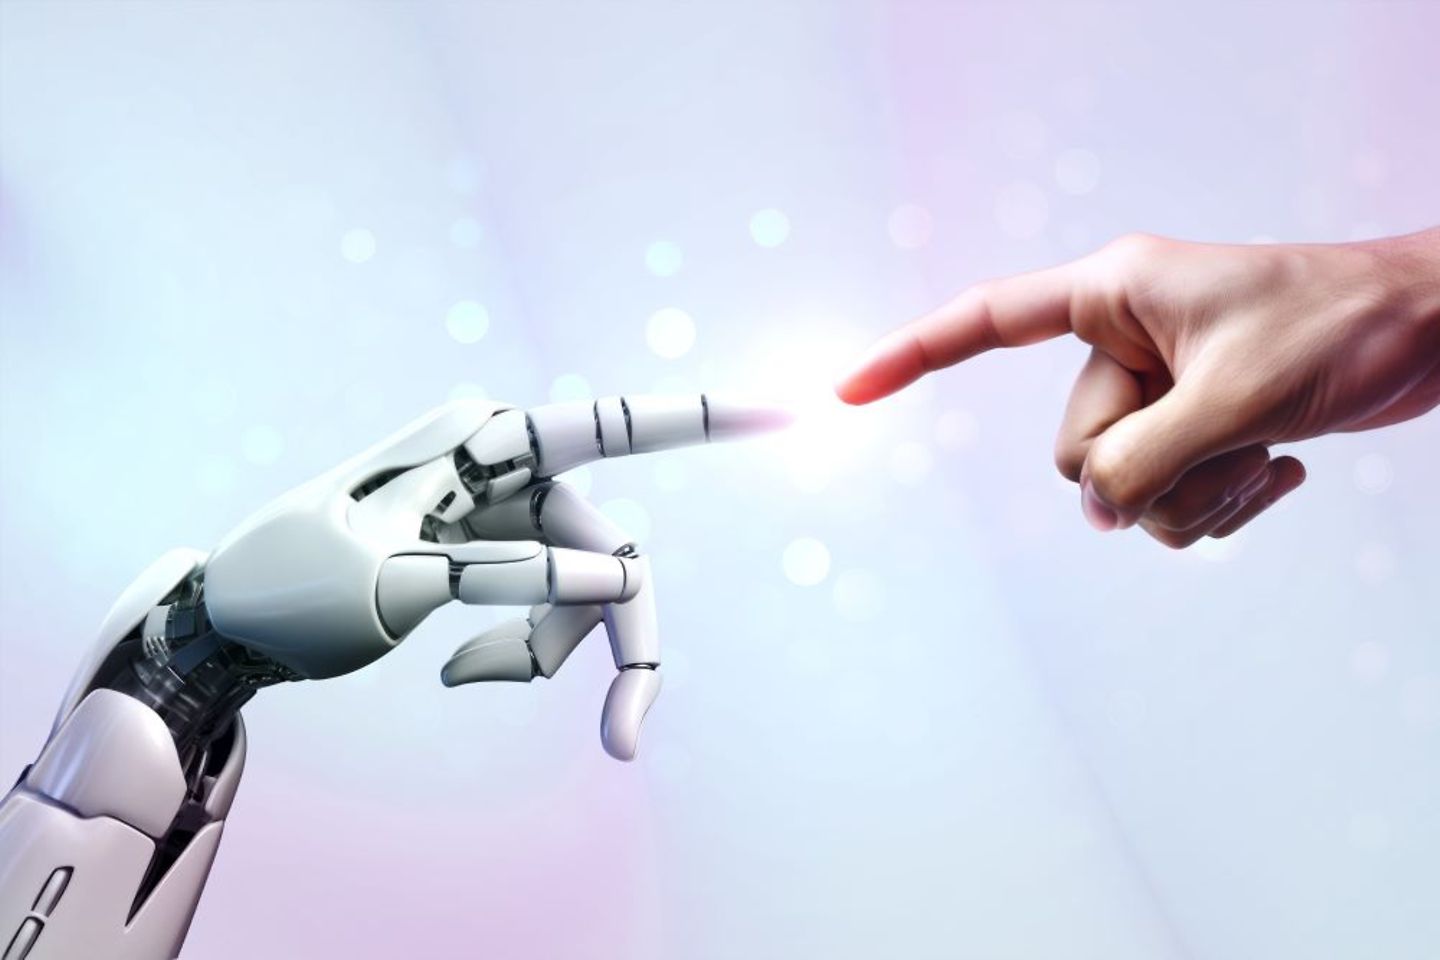 Mano robótica y mano humana tocándose y conectándose